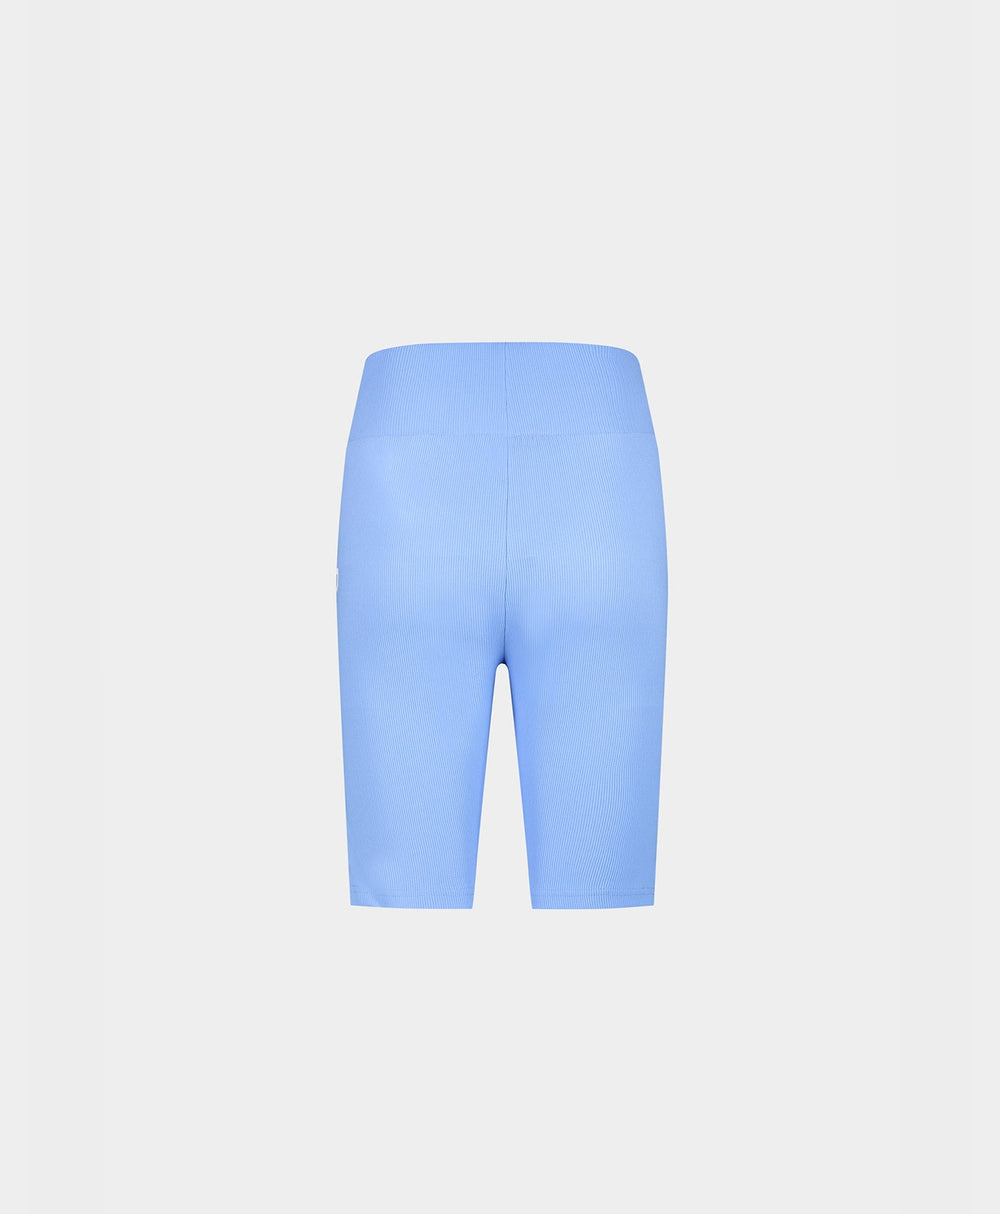 DP - Baby Blue Revin Cycle Shorts - Packshot - REar